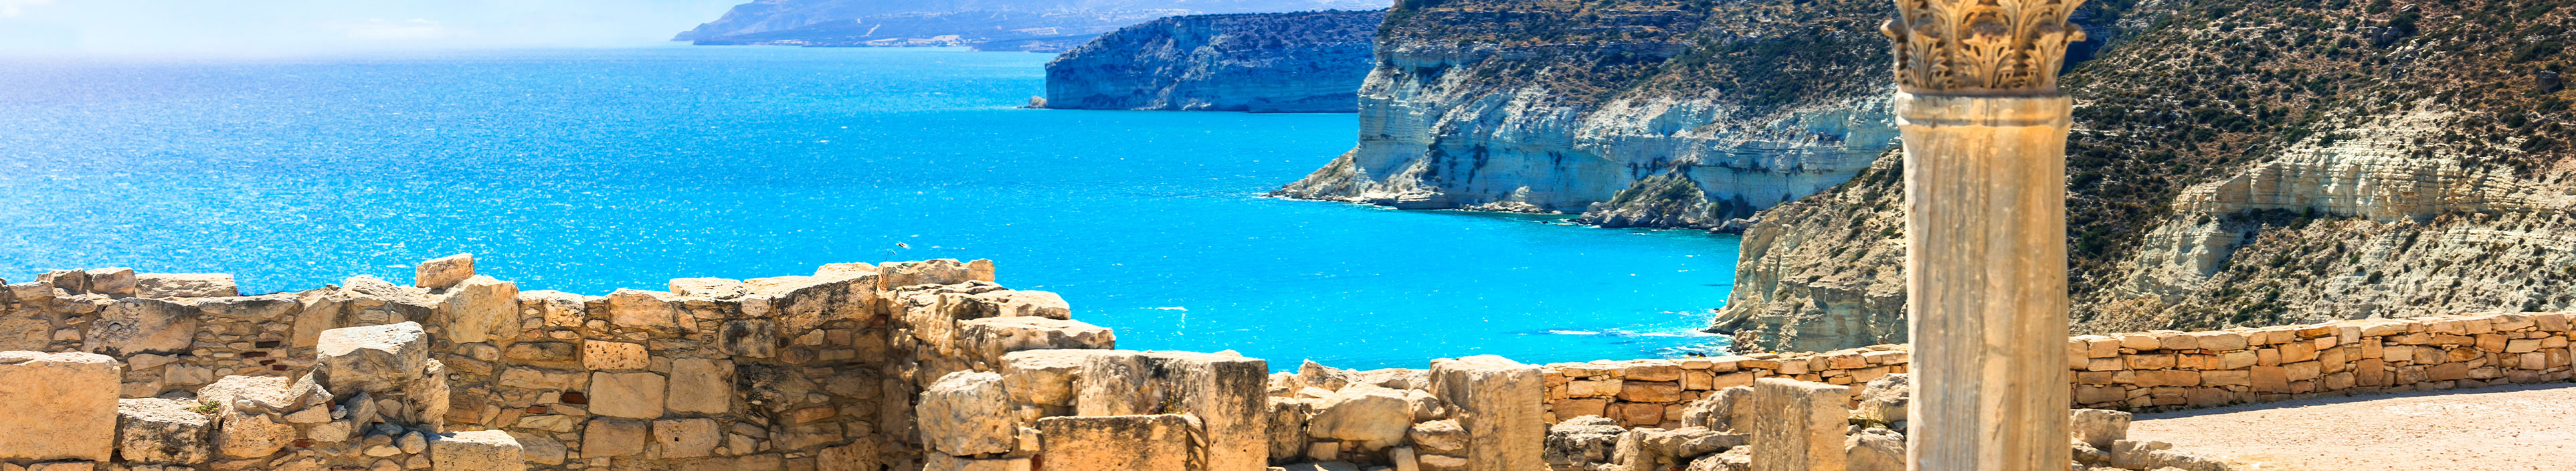 Urlaub Zypern. Die archäologische Ausgrabungsstätte von Kourion am türkisblauen Meer.